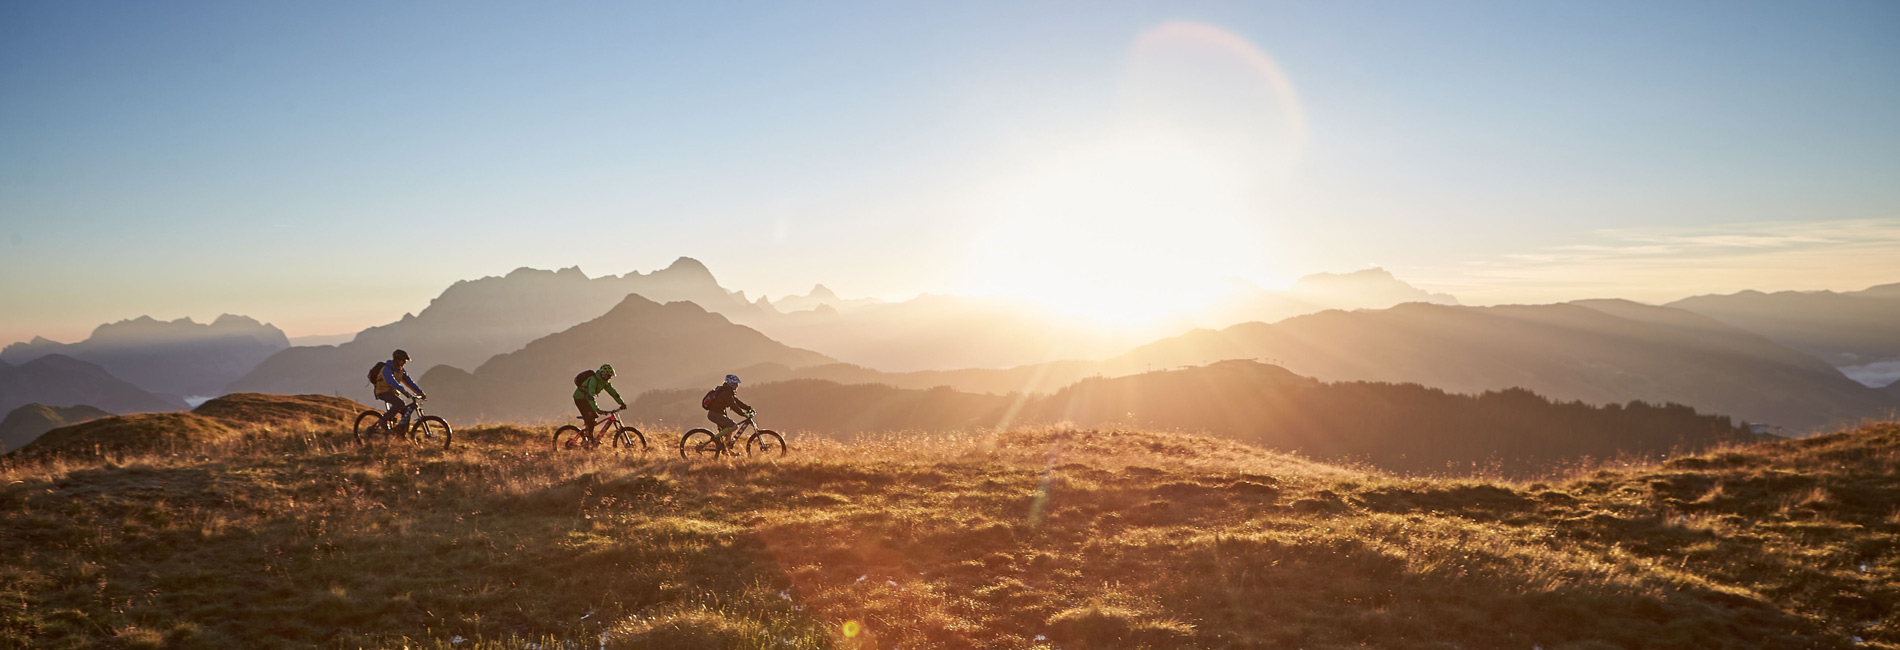 Mountainbiken und Trail biken im Salzburger Land - Bikcircus Saalbach Hinterglemm - copyright Daniel Roos